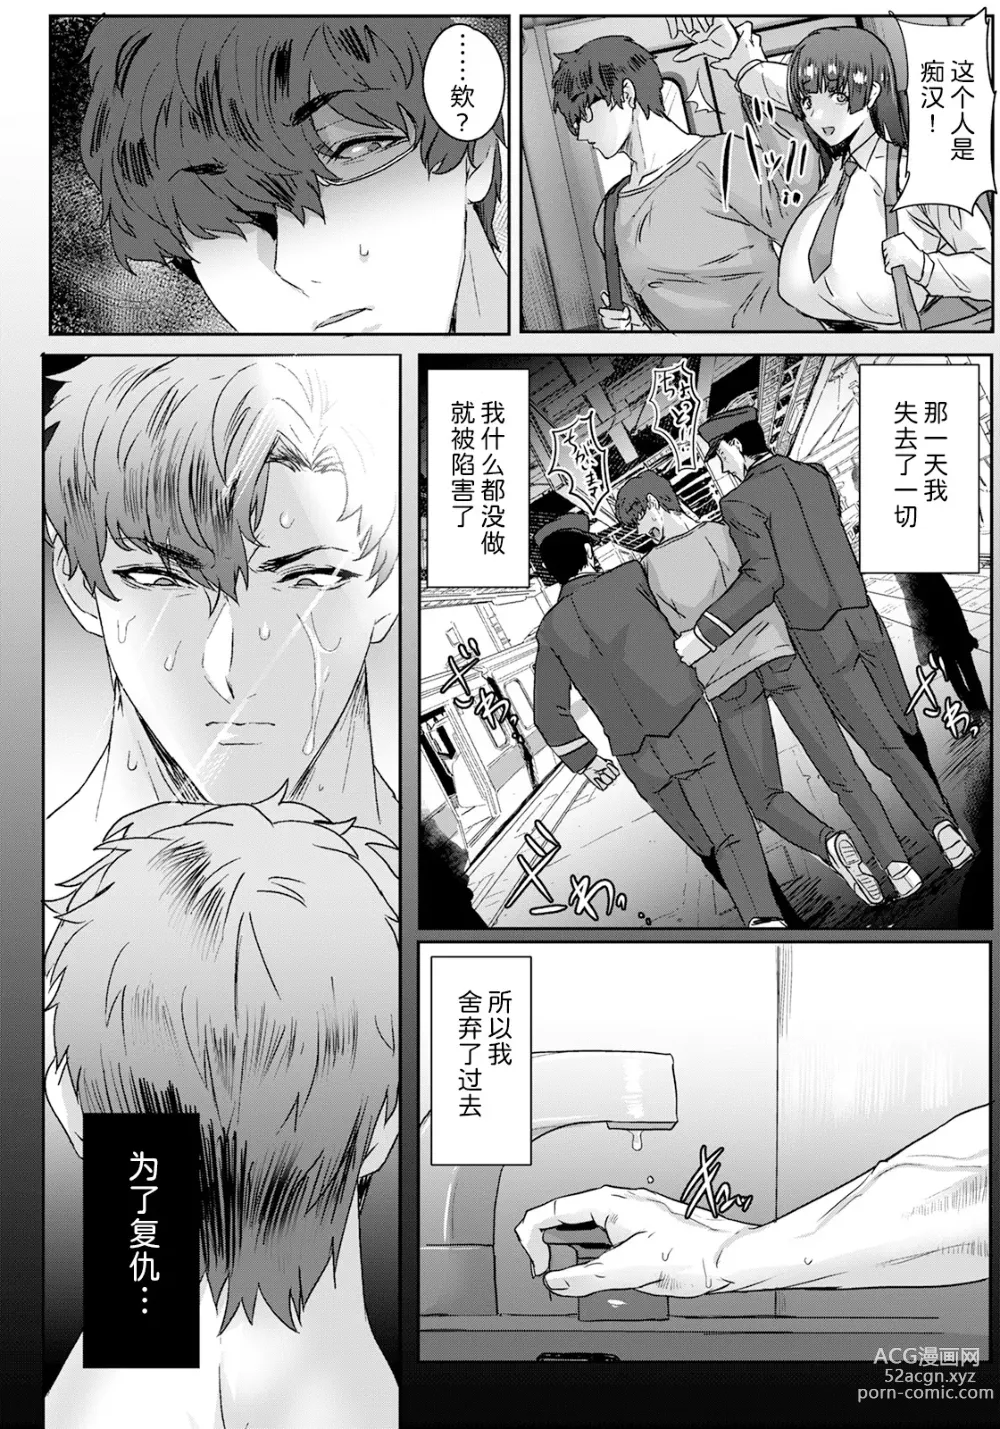 Page 6 of manga Jusei Sankan Ch. 1-4